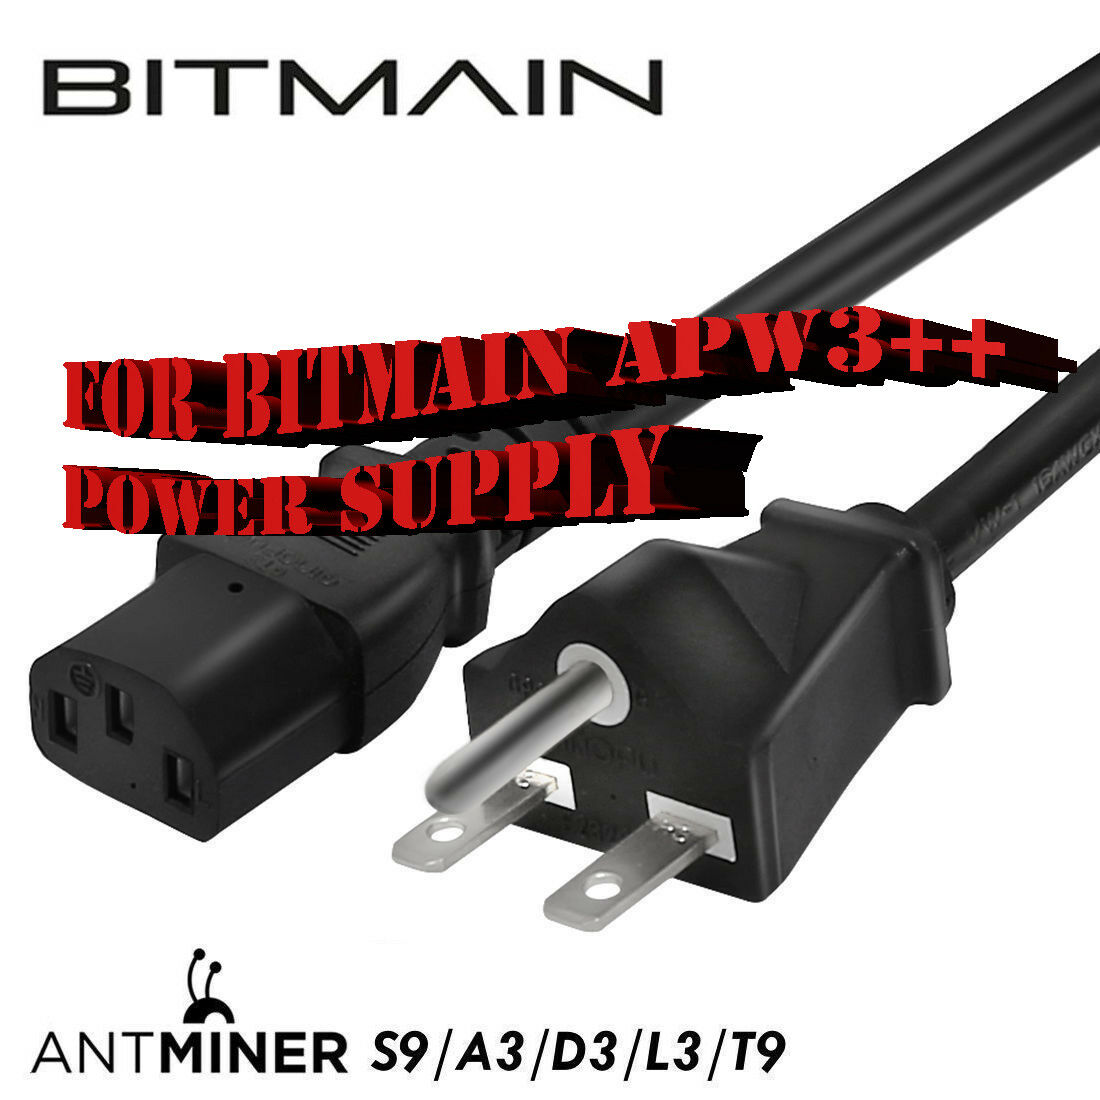 Bitmain Psu 220v 240v Heavy 16awg Power Cord Cable Antminer S9 L3 Nema 6-20p 6ft